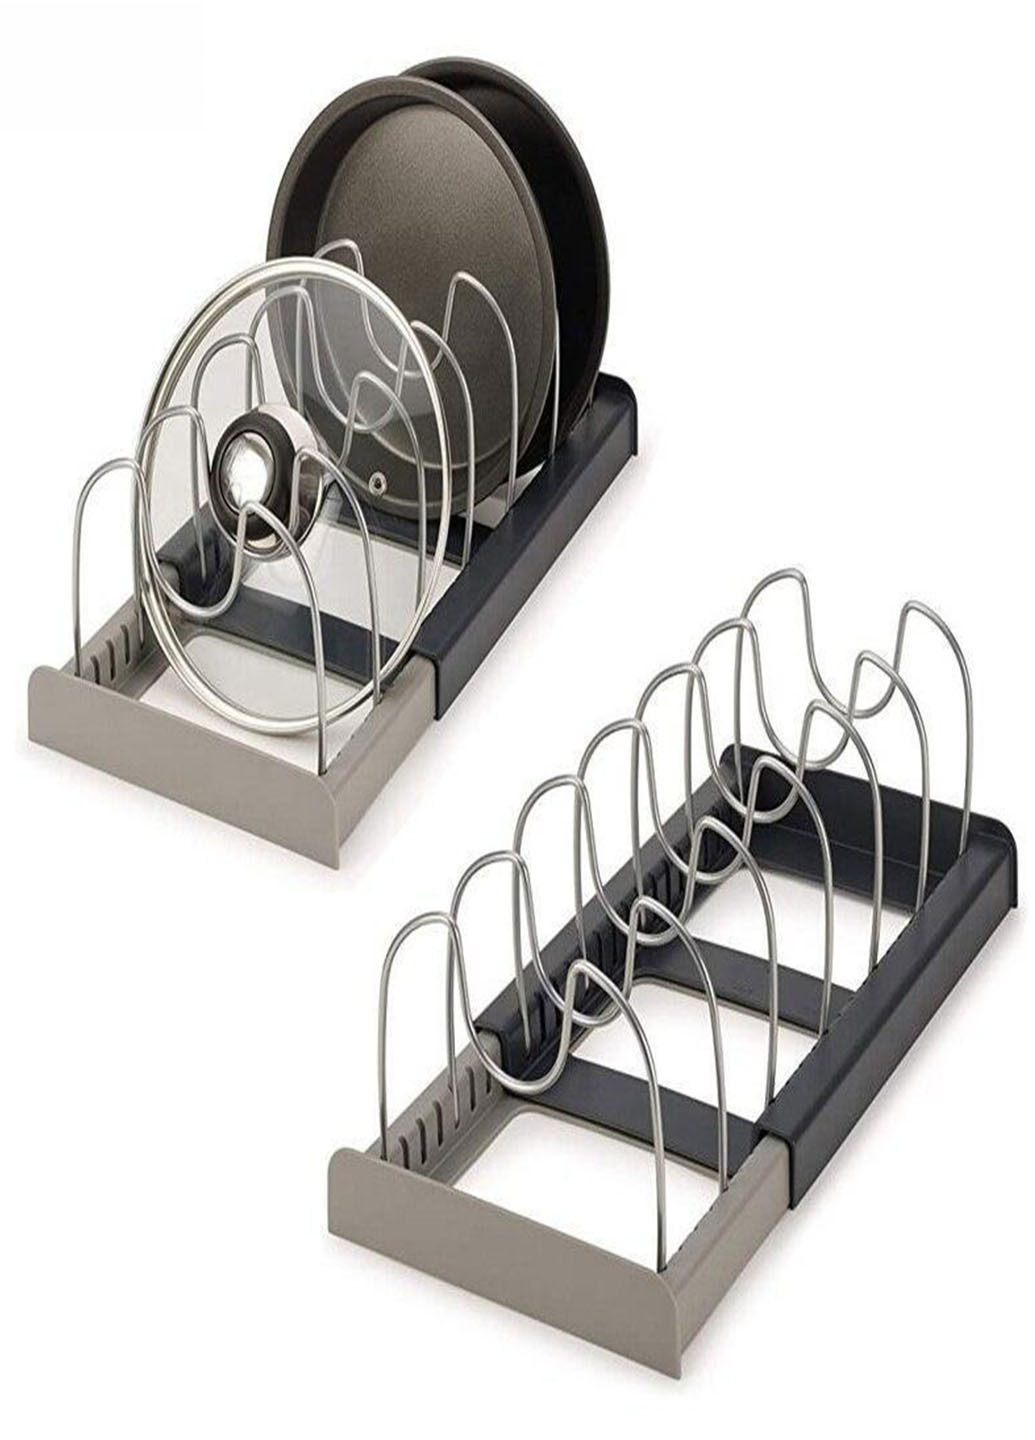 Підставка для кришок і дощок Good Idea органайзер для зберігання посуду з нержавіючої сталі Stenson dish rack (259508634)